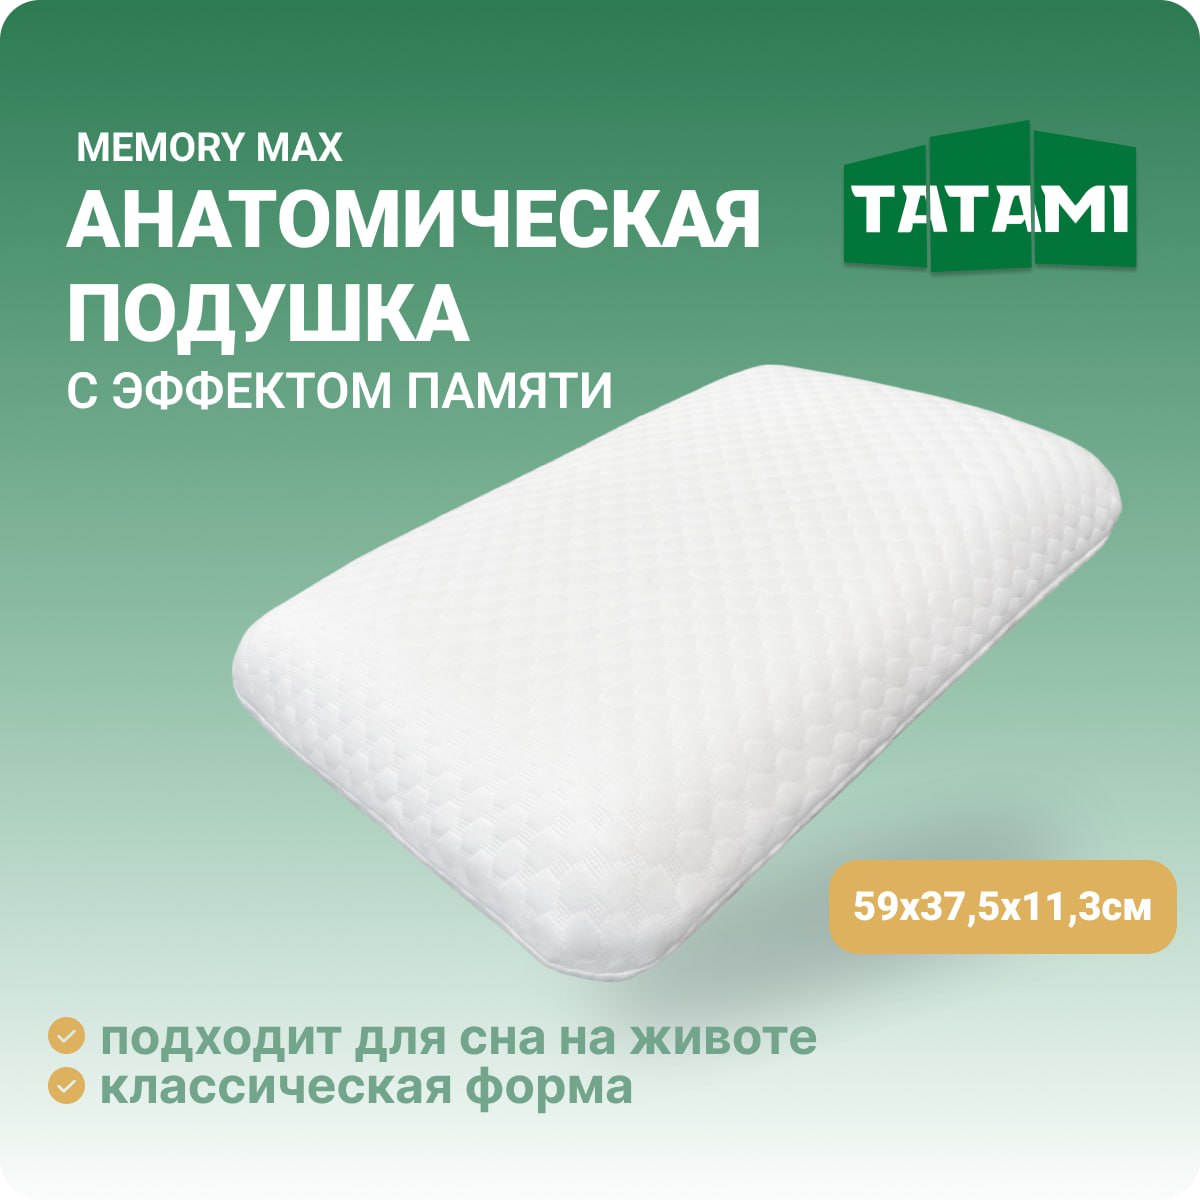 Ортопедическая подушка с эффектом памяти Tatami Memory Max 37.5x59 см, высота 11.3 см